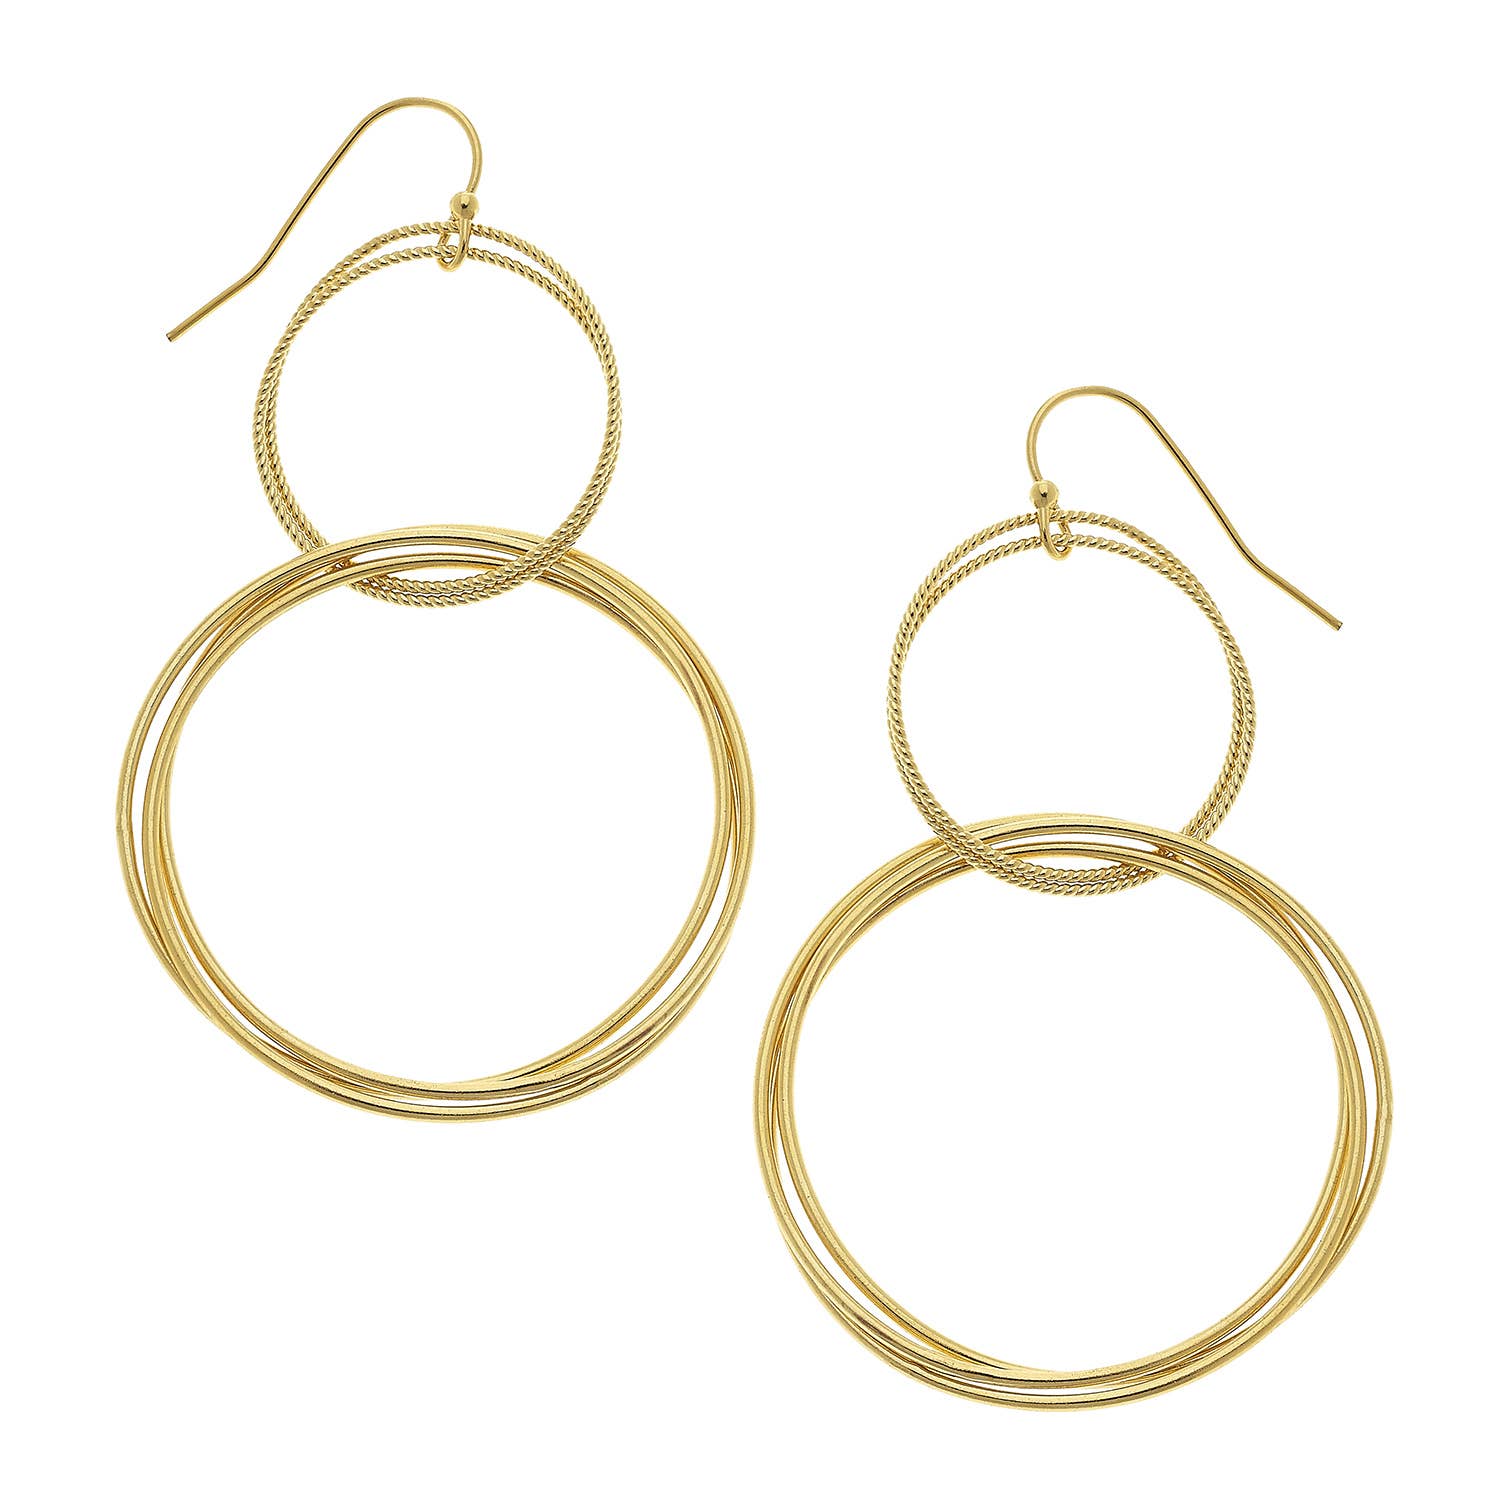 Gold Double Rings Earrings